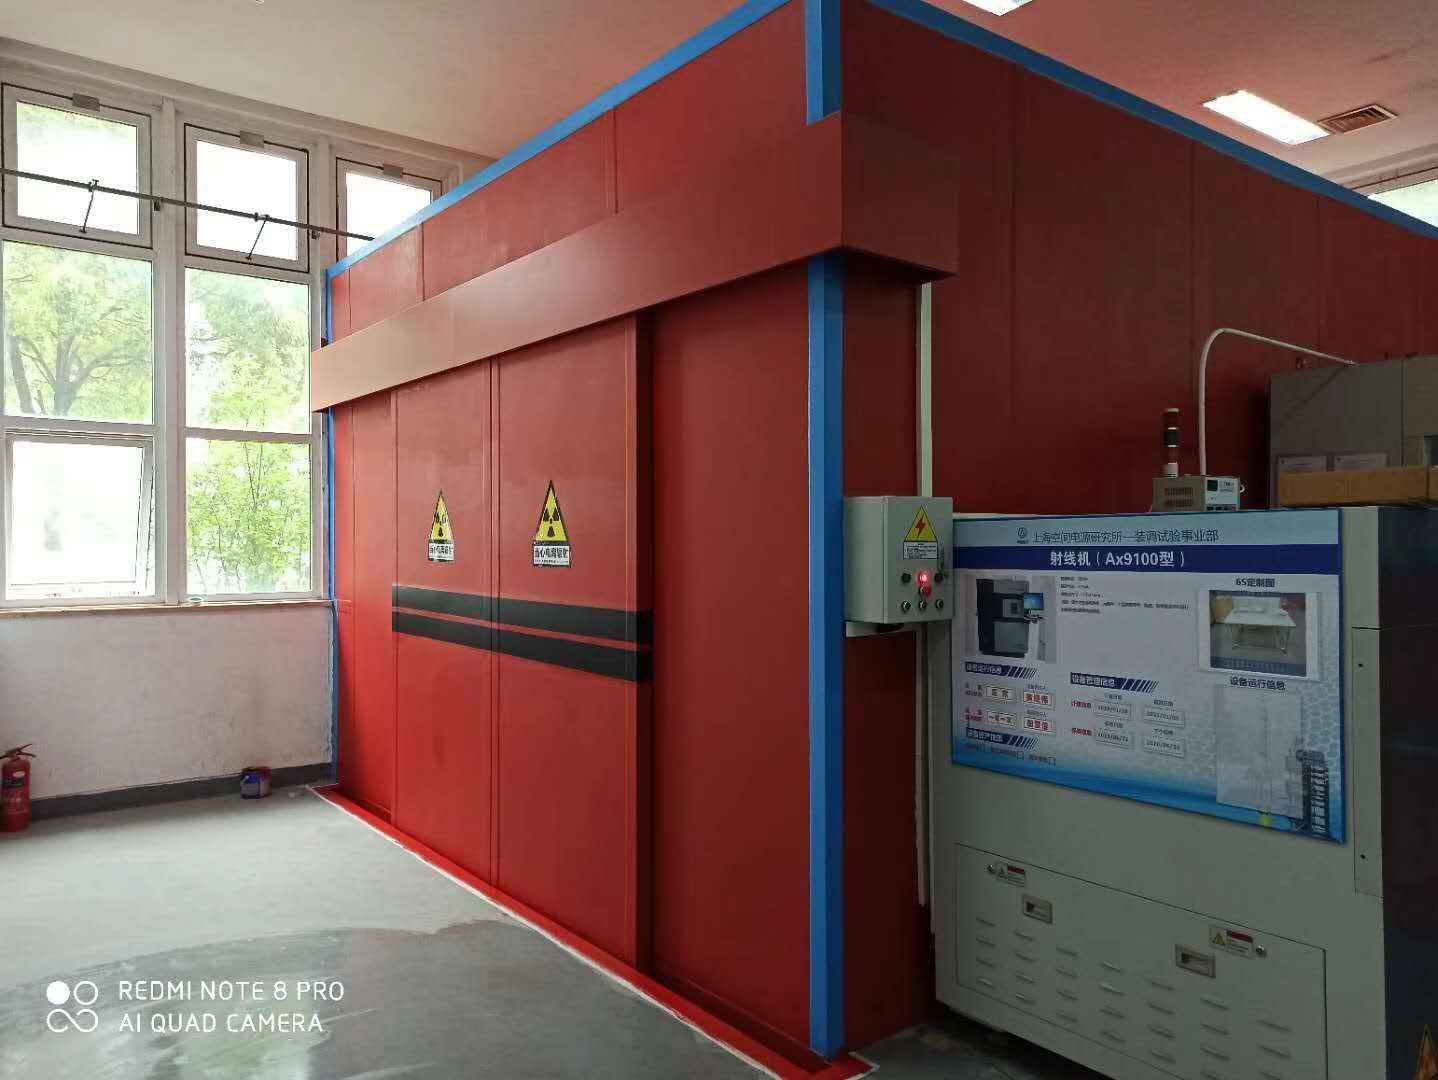  工業(yè)射線(xiàn)探傷輻射防護與安全措施